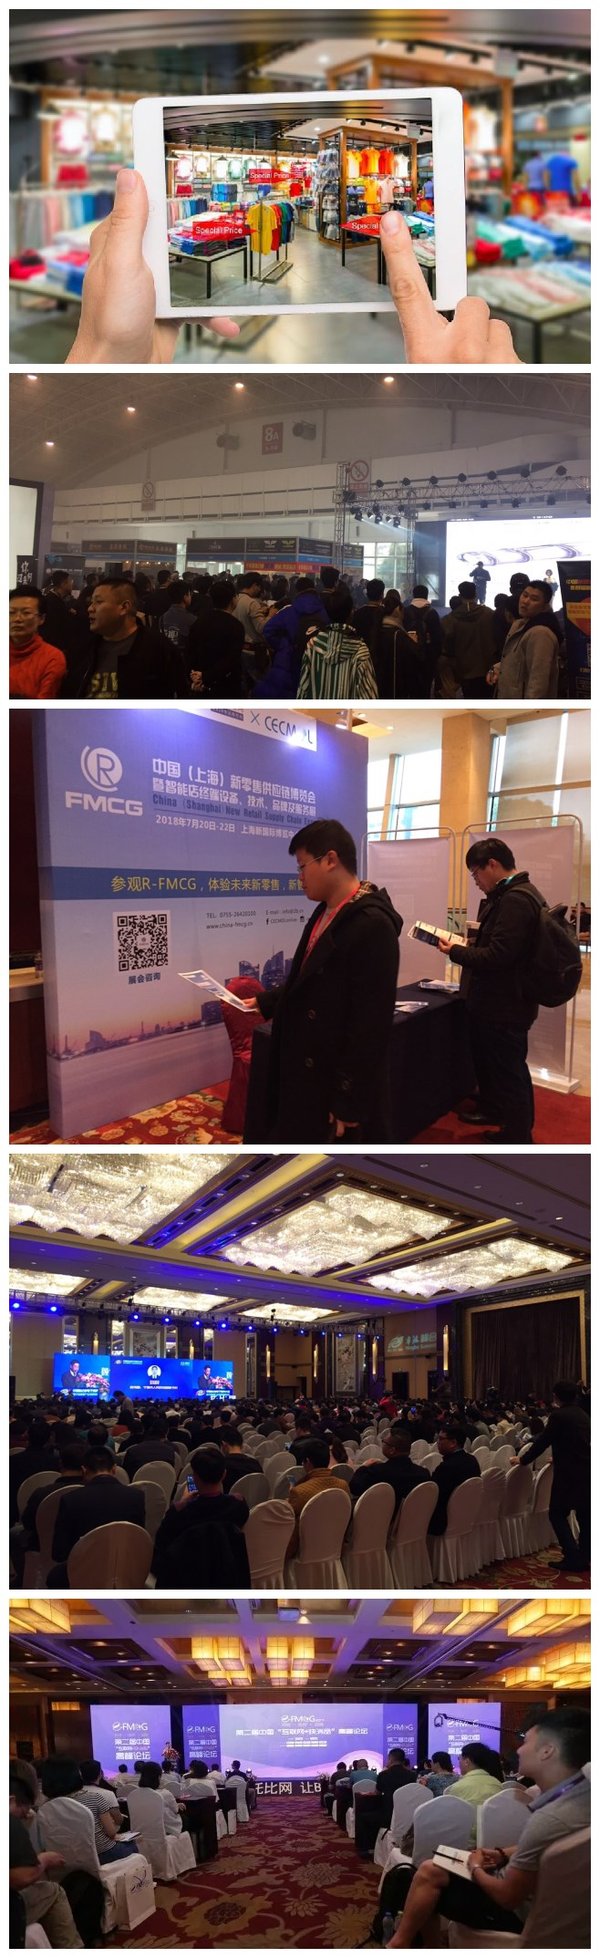 2018上海国际新零售产业博览会 迭代升级 新高度